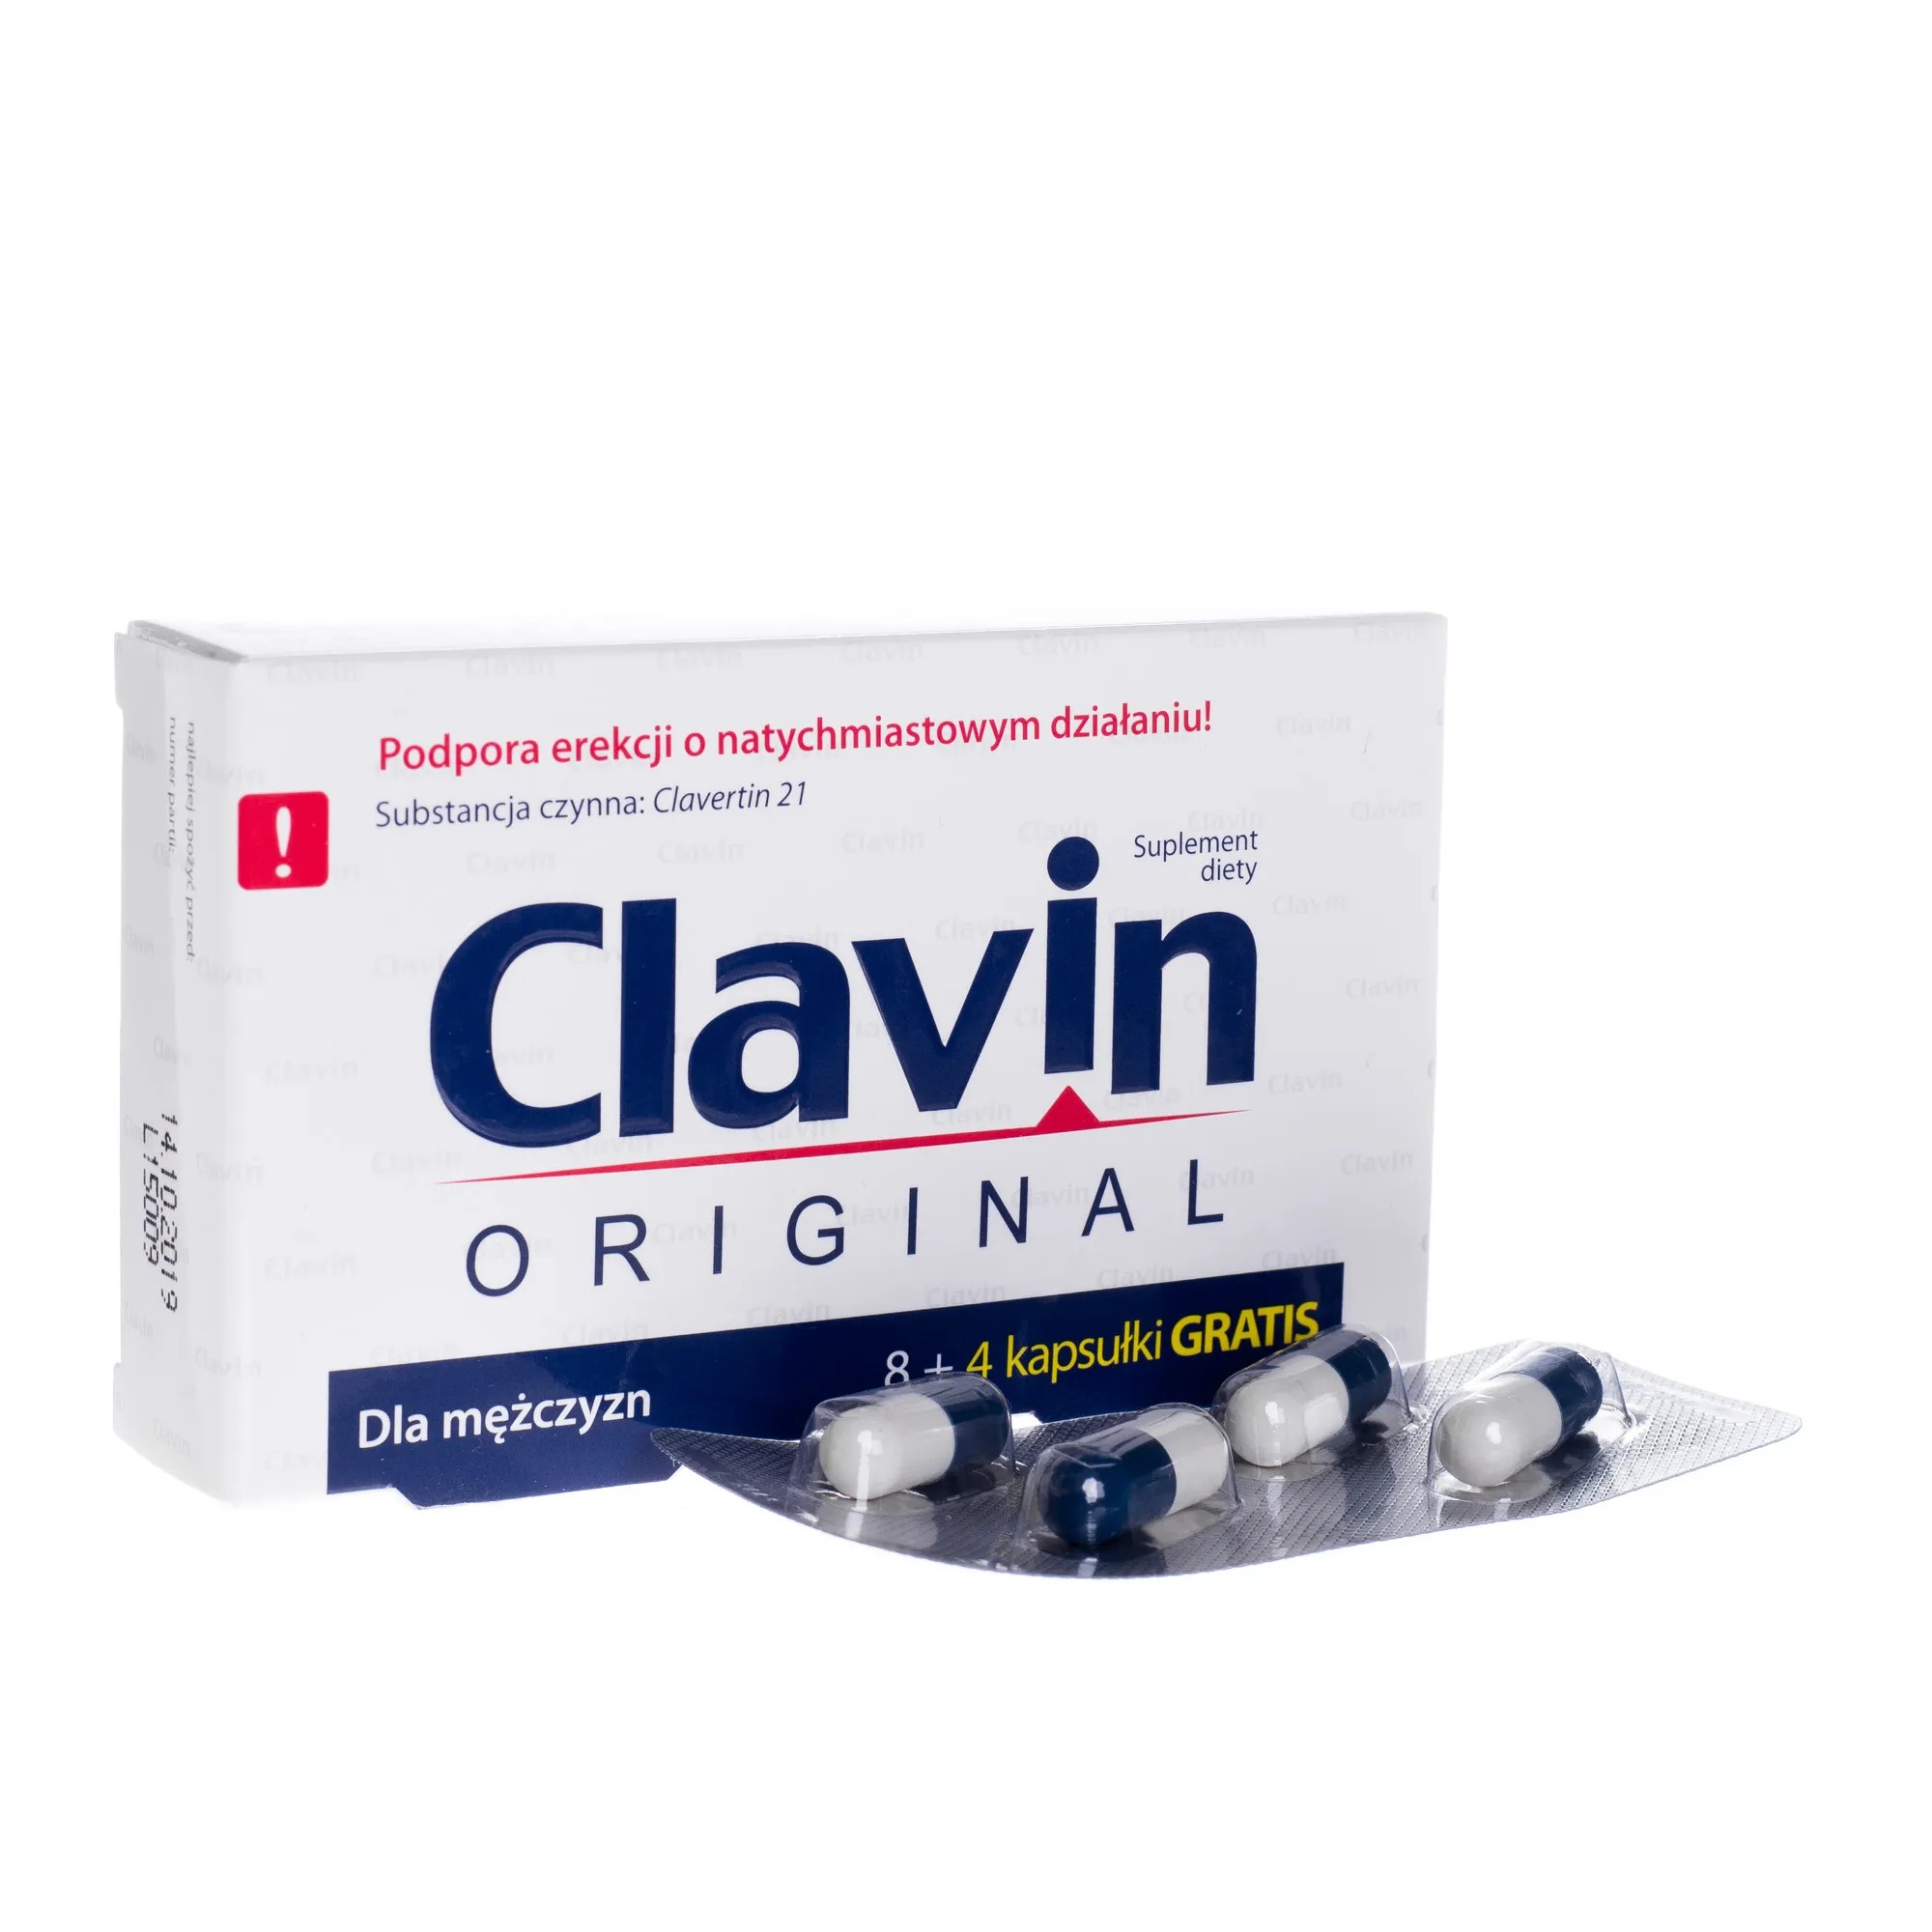 Clavin original, suplement diety dla mężczyzn, 8+4 kapsułki